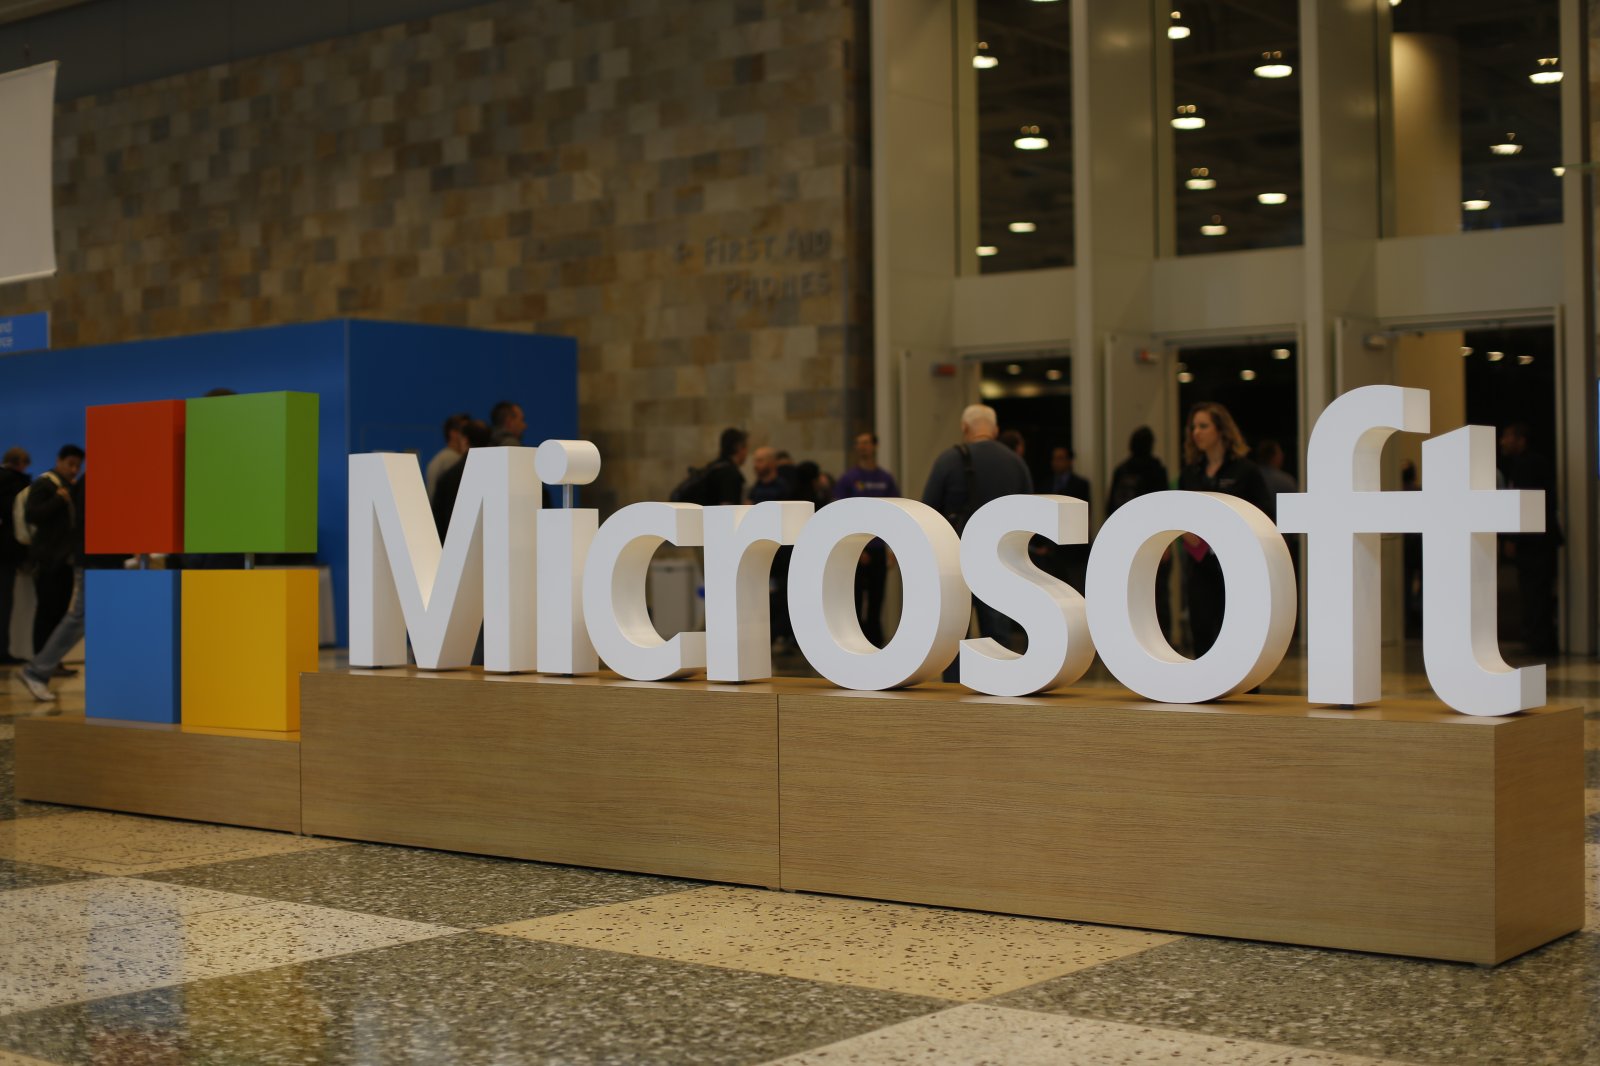 Microsoft: US-Behörden wollen Zugriff auf Daten im Ausland - Futurezone